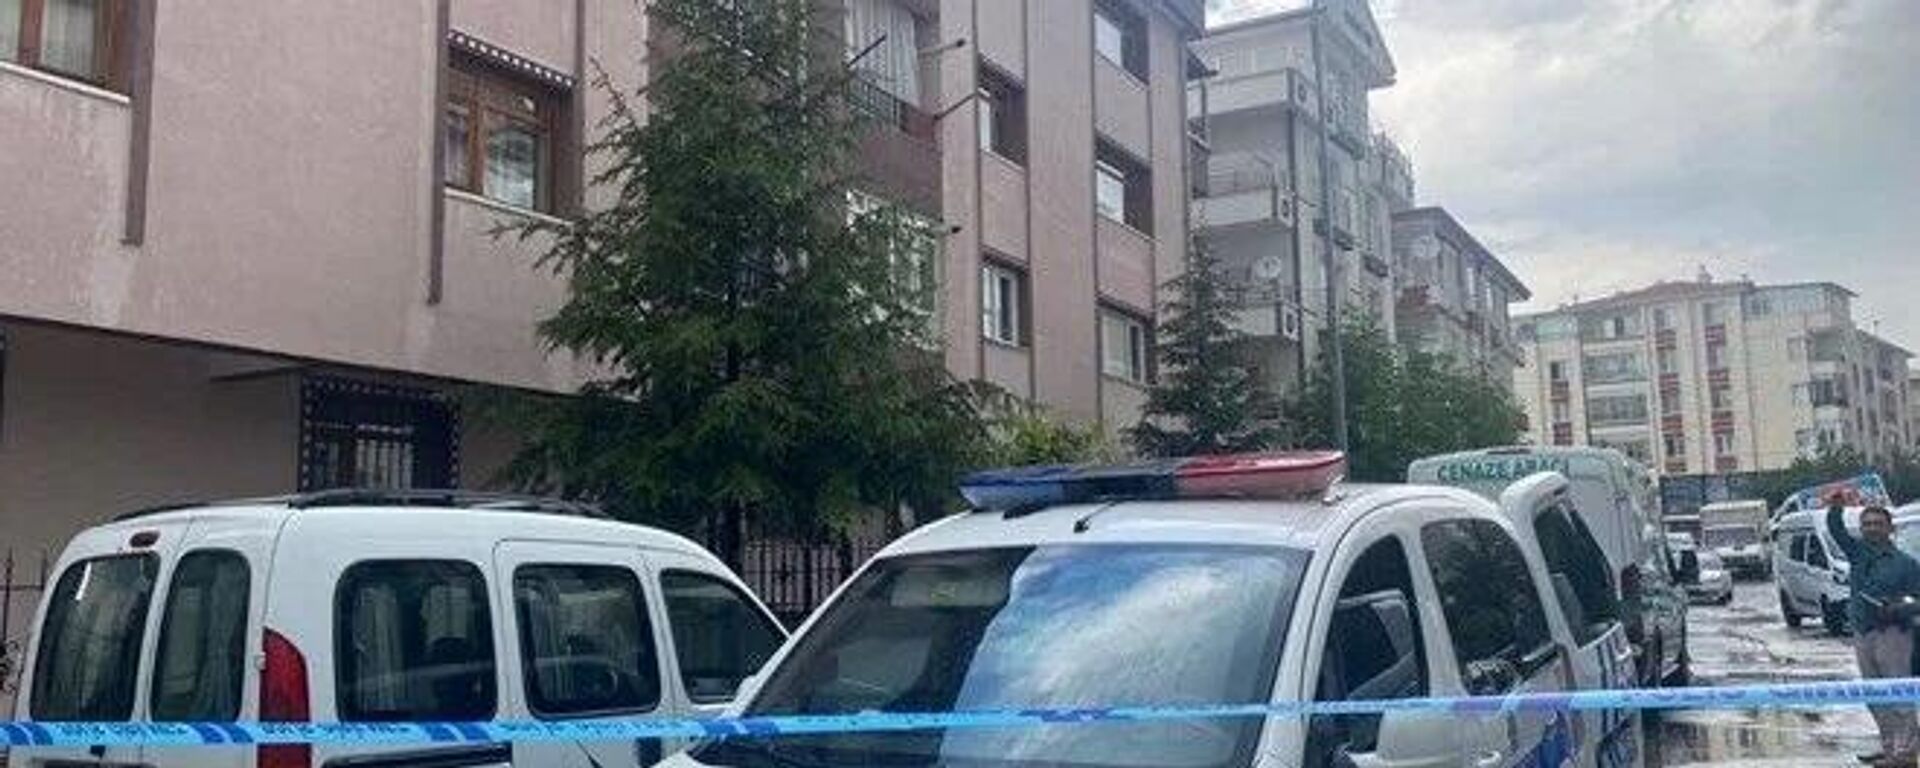 Ankara'da kadın cinayeti: Boşanma aşamasındaki eşini öldürüp intihar etti - Sputnik Türkiye, 1920, 07.06.2022